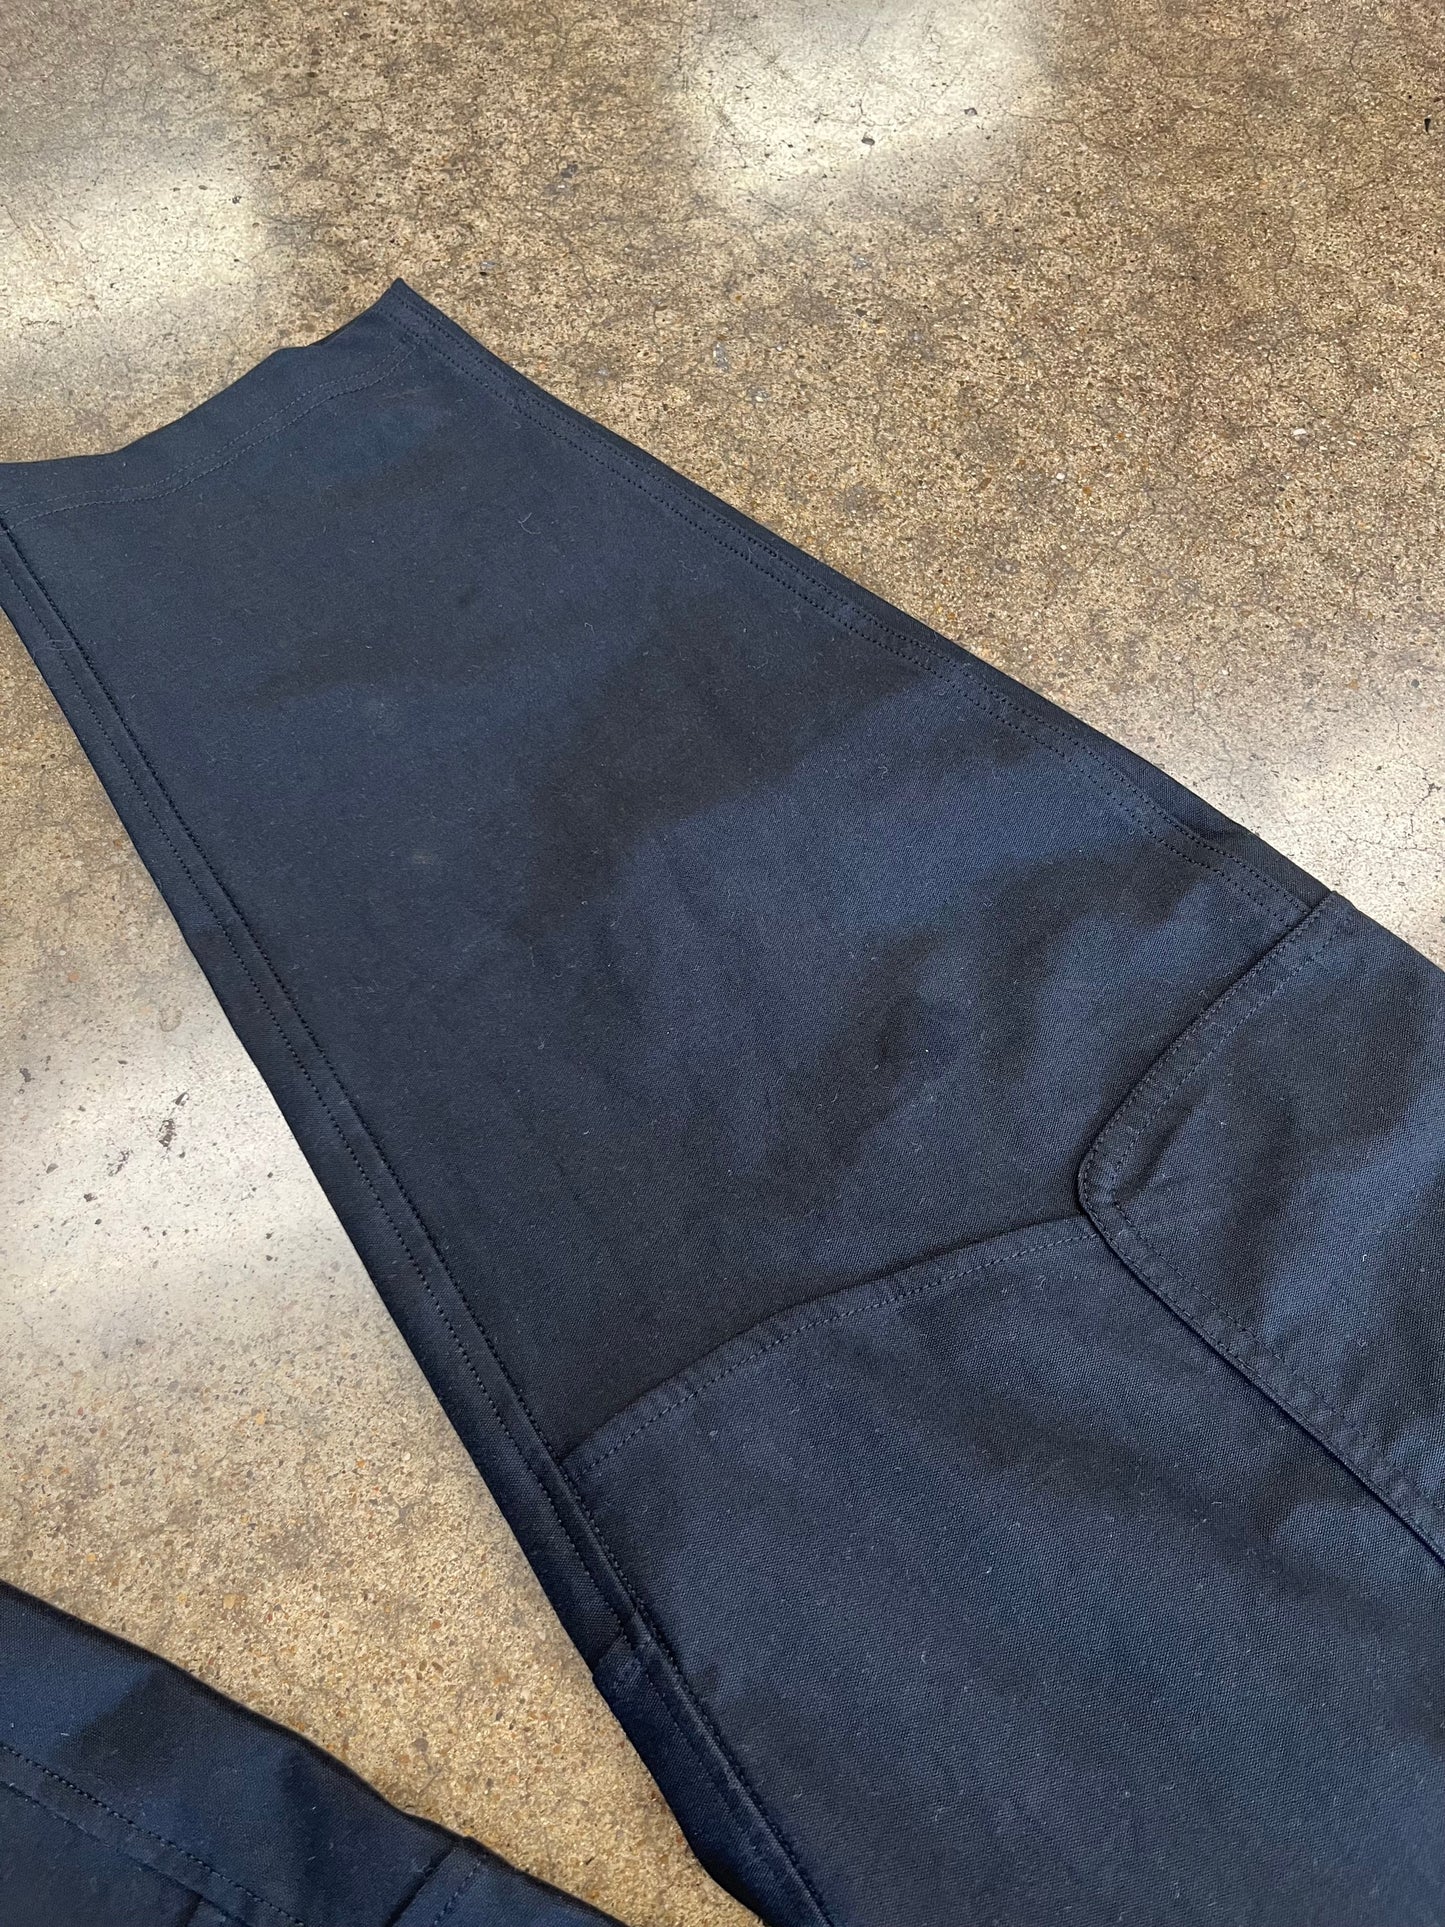 Black Athletic Pants Lululemon, Size 26